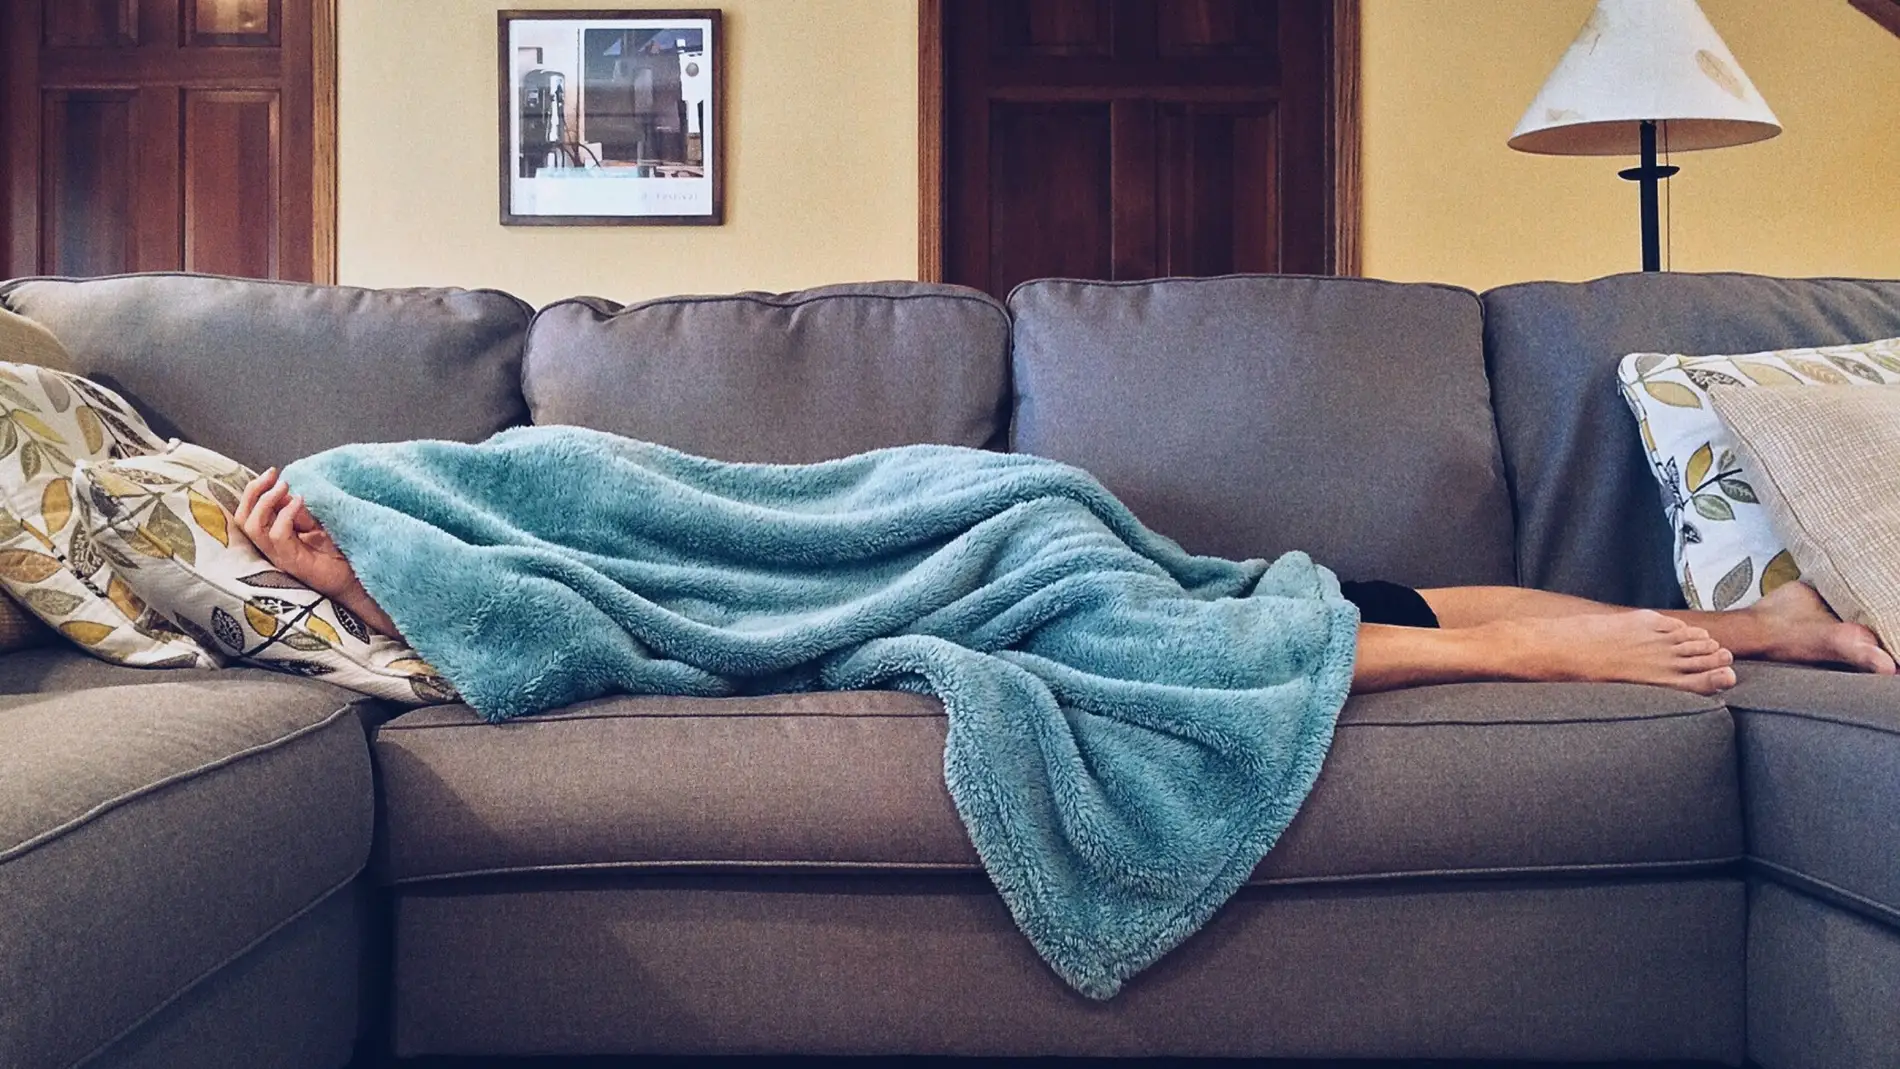 Una persona durmiendo en el sofá